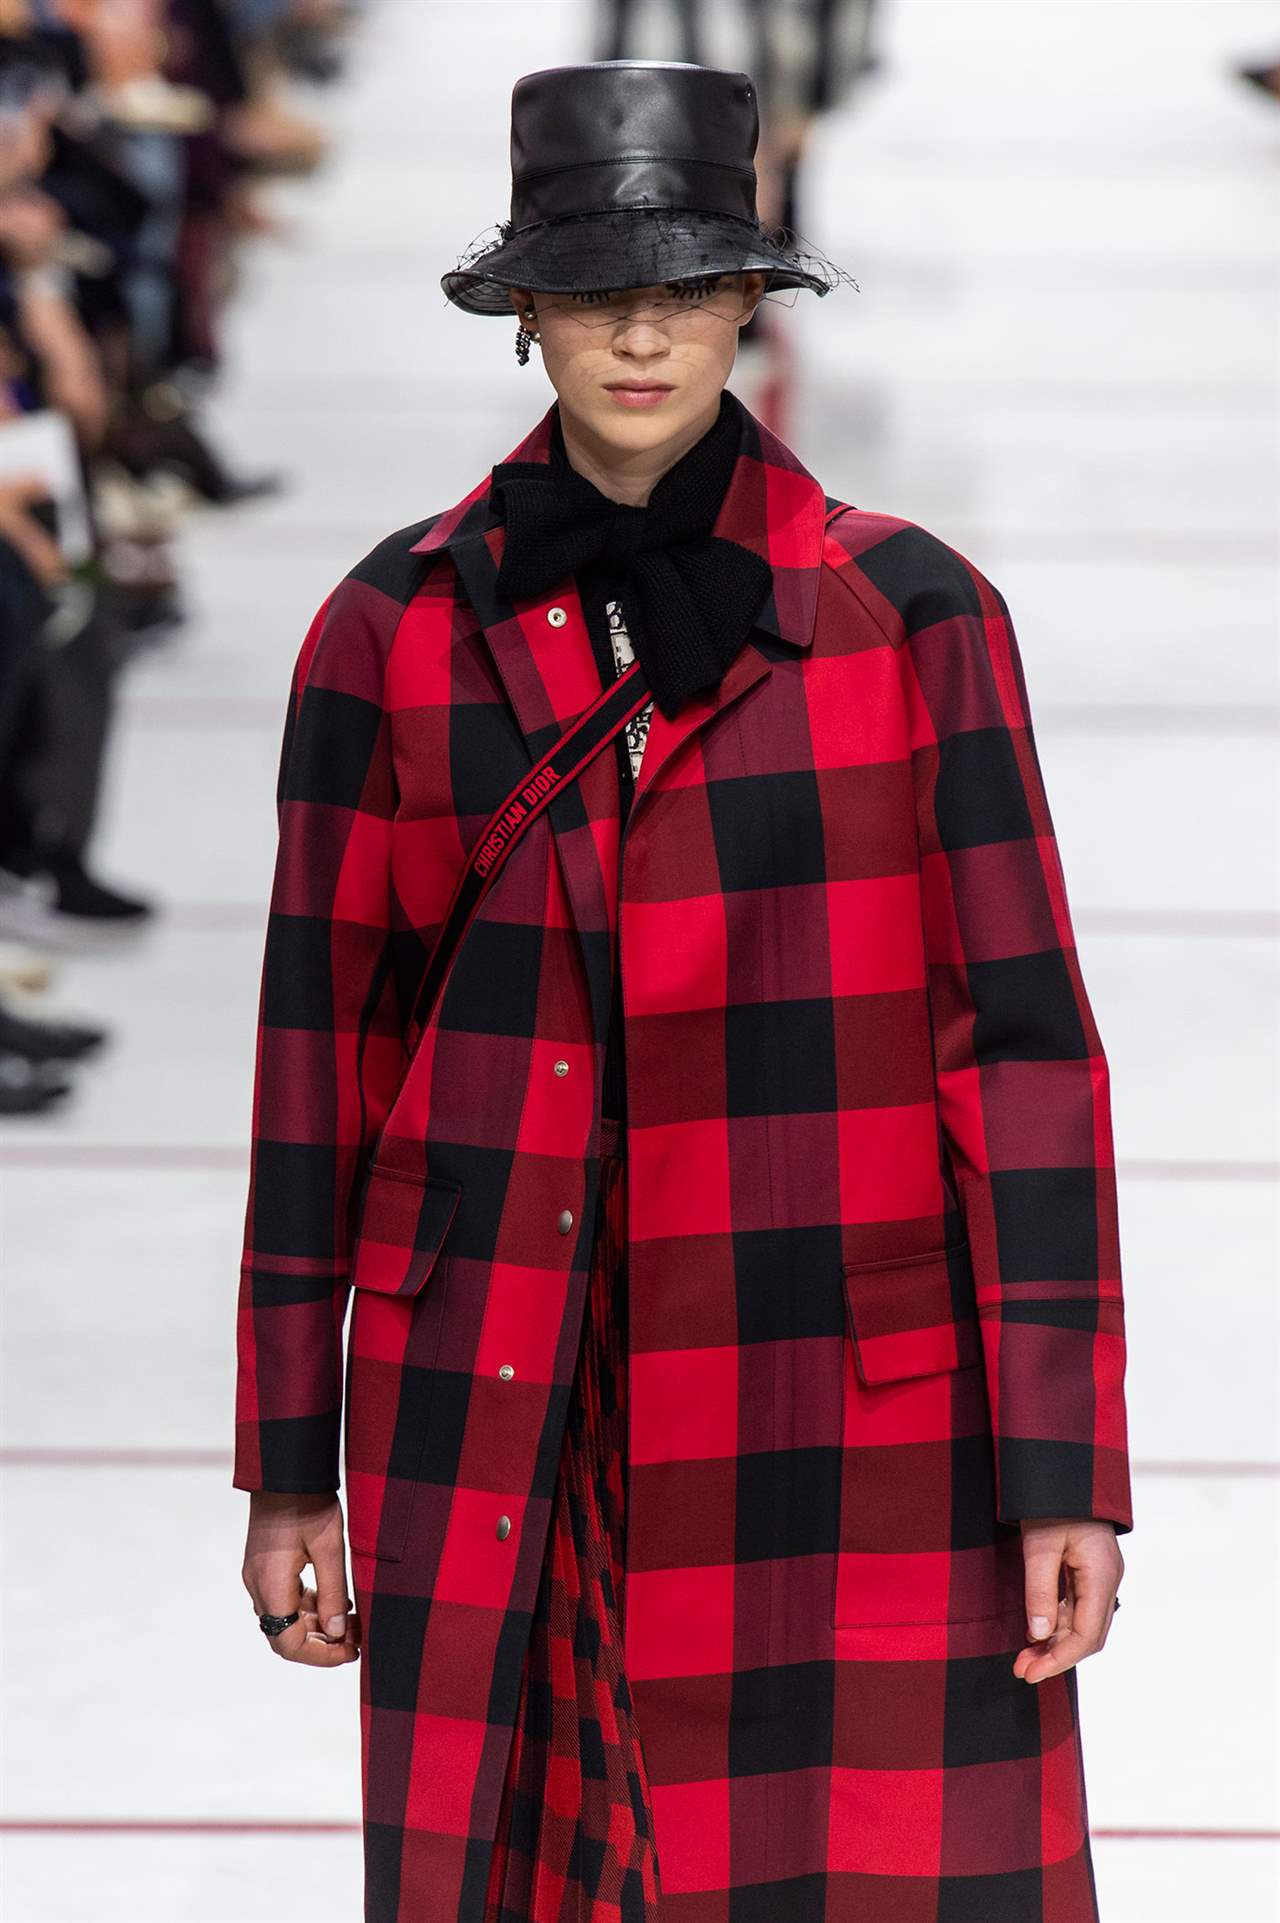 Borde tenga en cuenta negativo Este abrigo que parece de Dior en realidad es de Primark y cuesta solo 40€